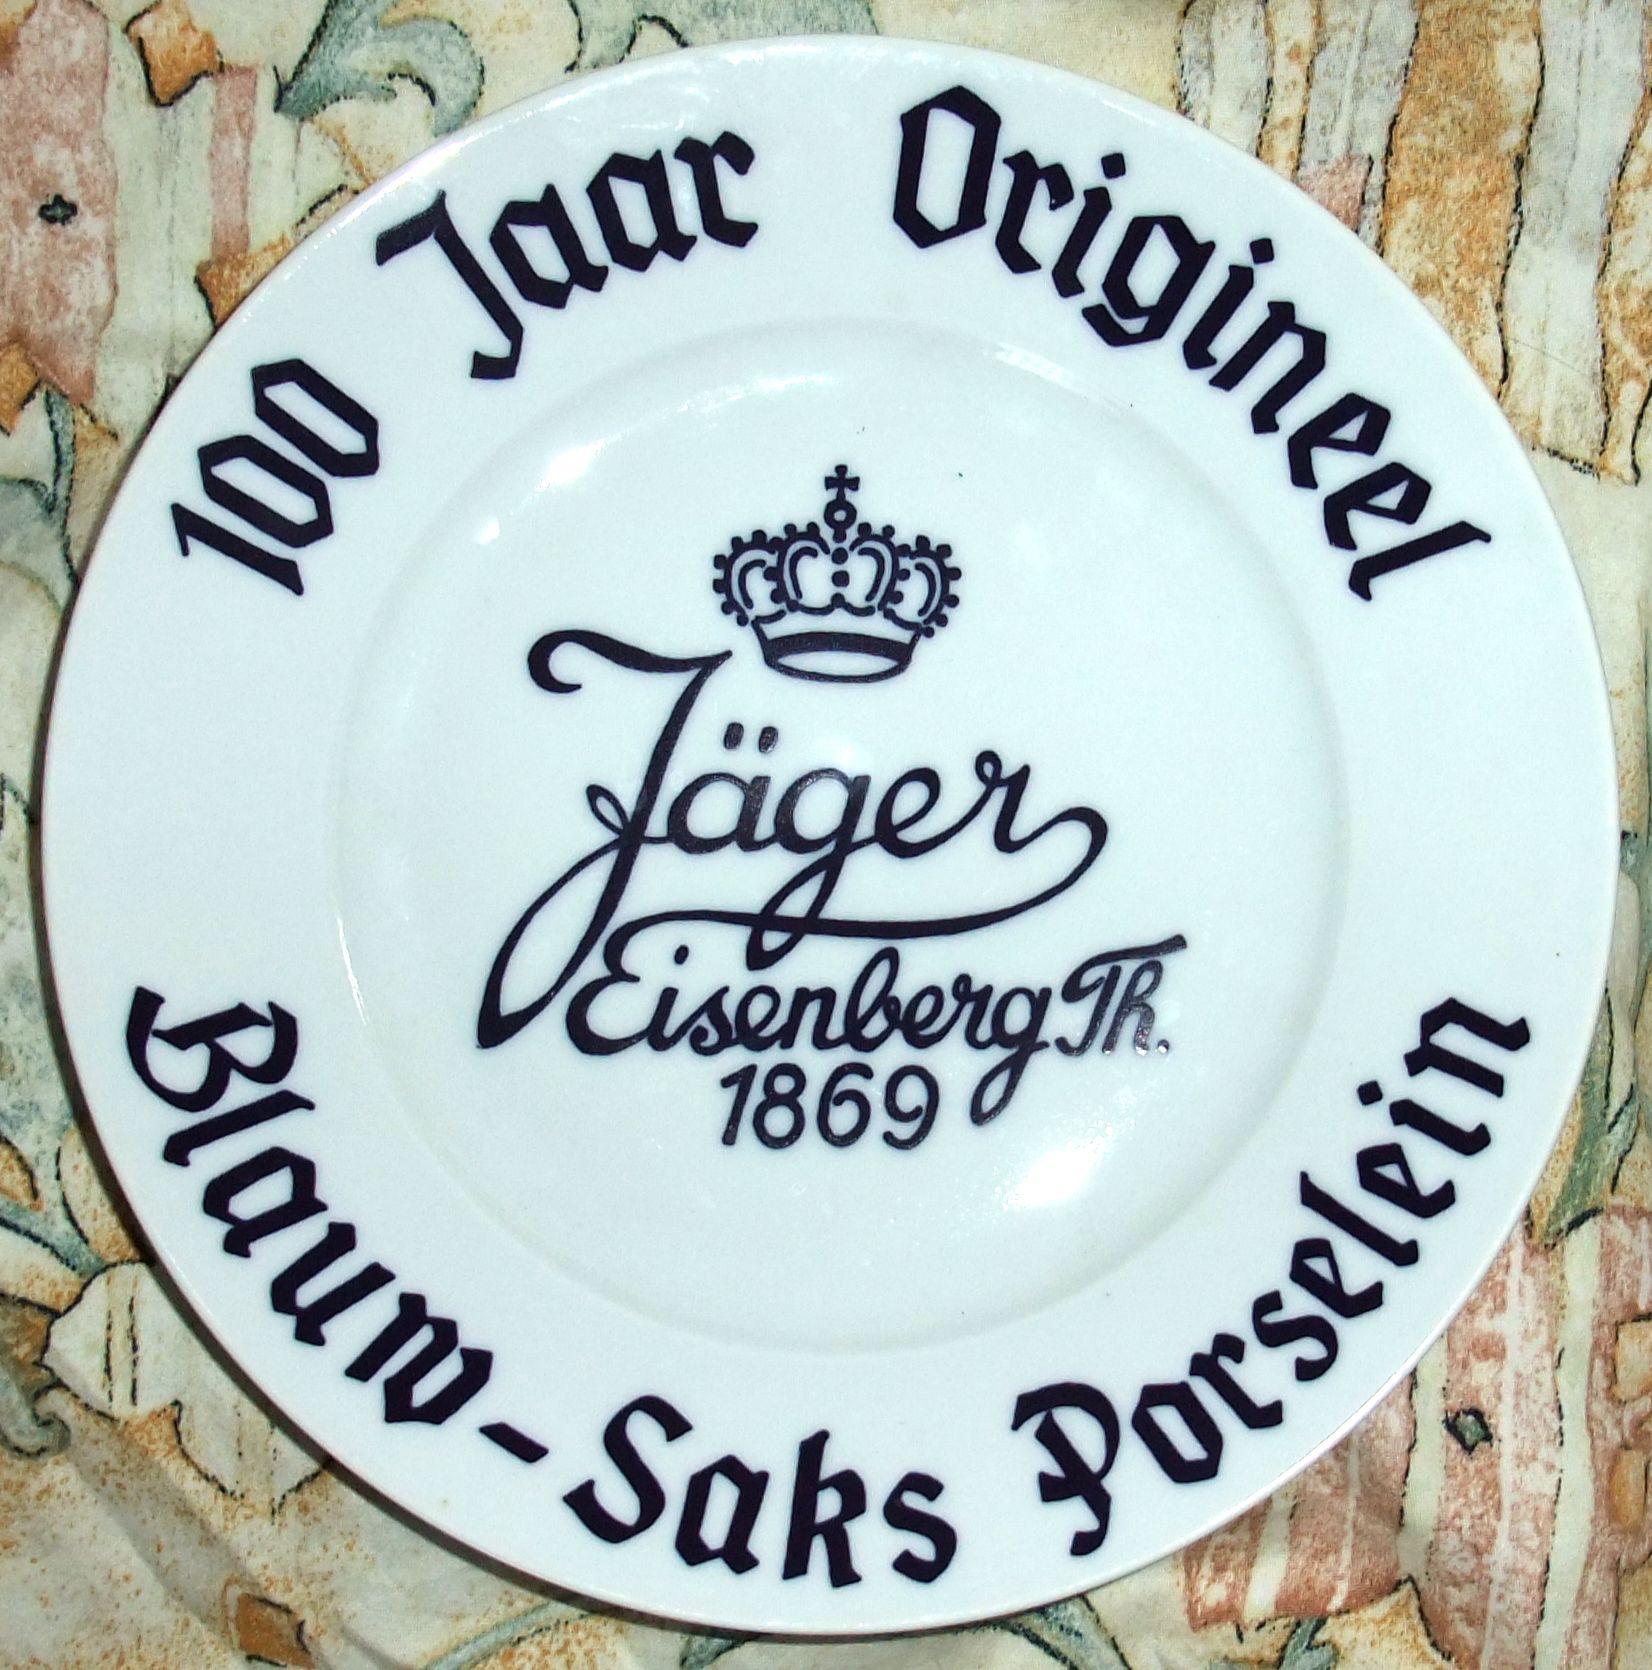 Teller zum Aufstellen für niederländische Händler, um 1990: Officieel Dealer Jäger Eisenberg seit 1869 Original BLAU SAKS.